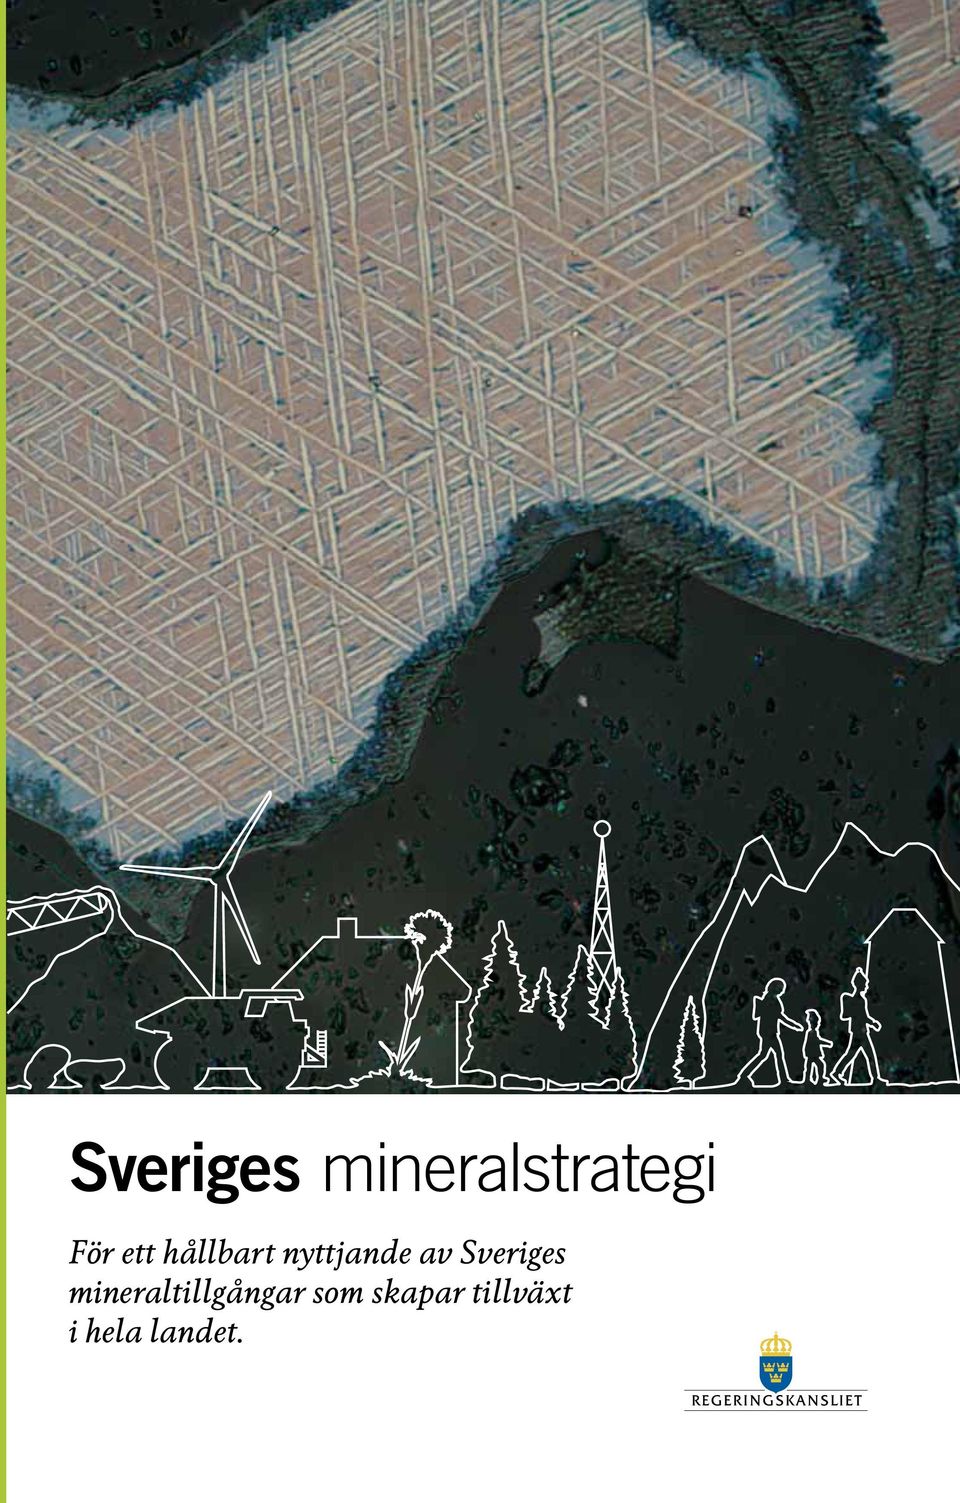 Sveriges mineraltillgångar